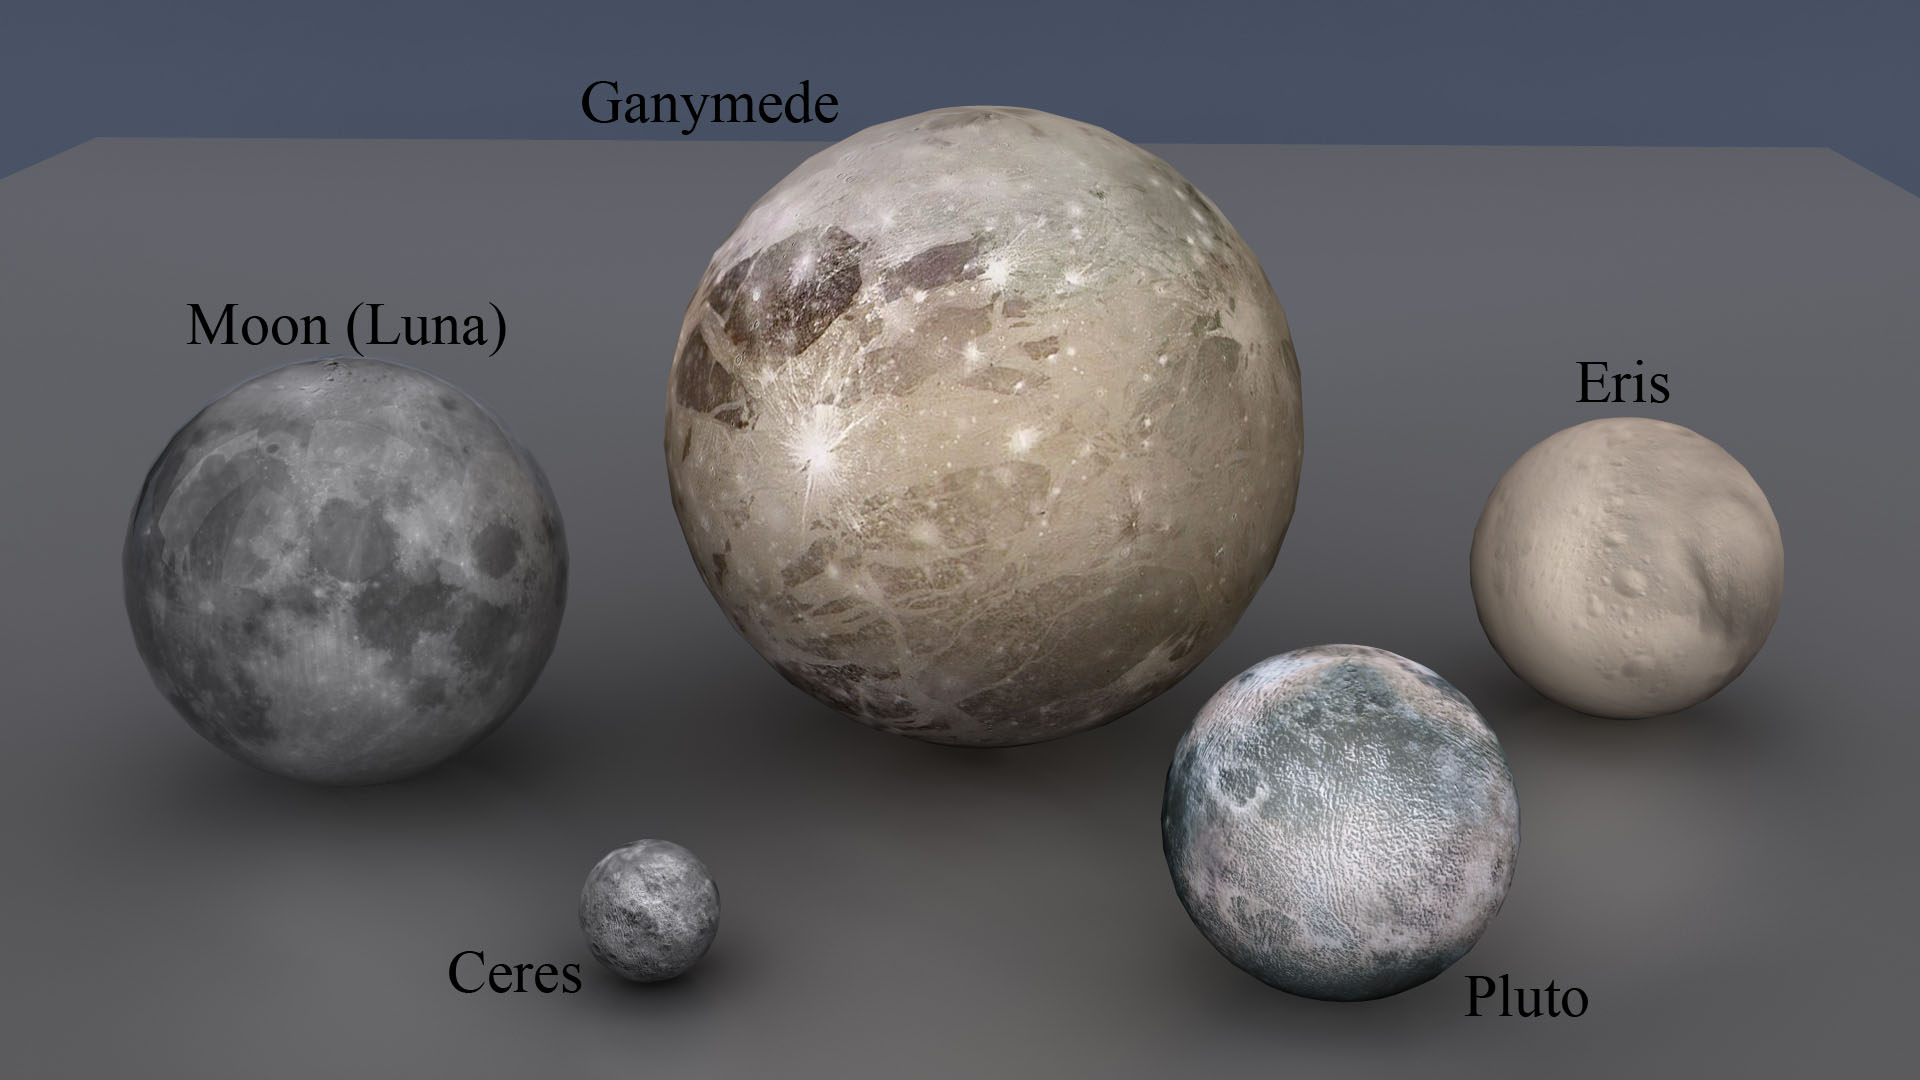 Khám phá bí ẩn của vệ tinh lớn nhất trong Hệ Mặt Trời - Ganymede Isthemoonganymedebiggerthanearth-1684547221002430779852-1684557544653-1684557545638409175998-1684673538164-16846735383861142042229